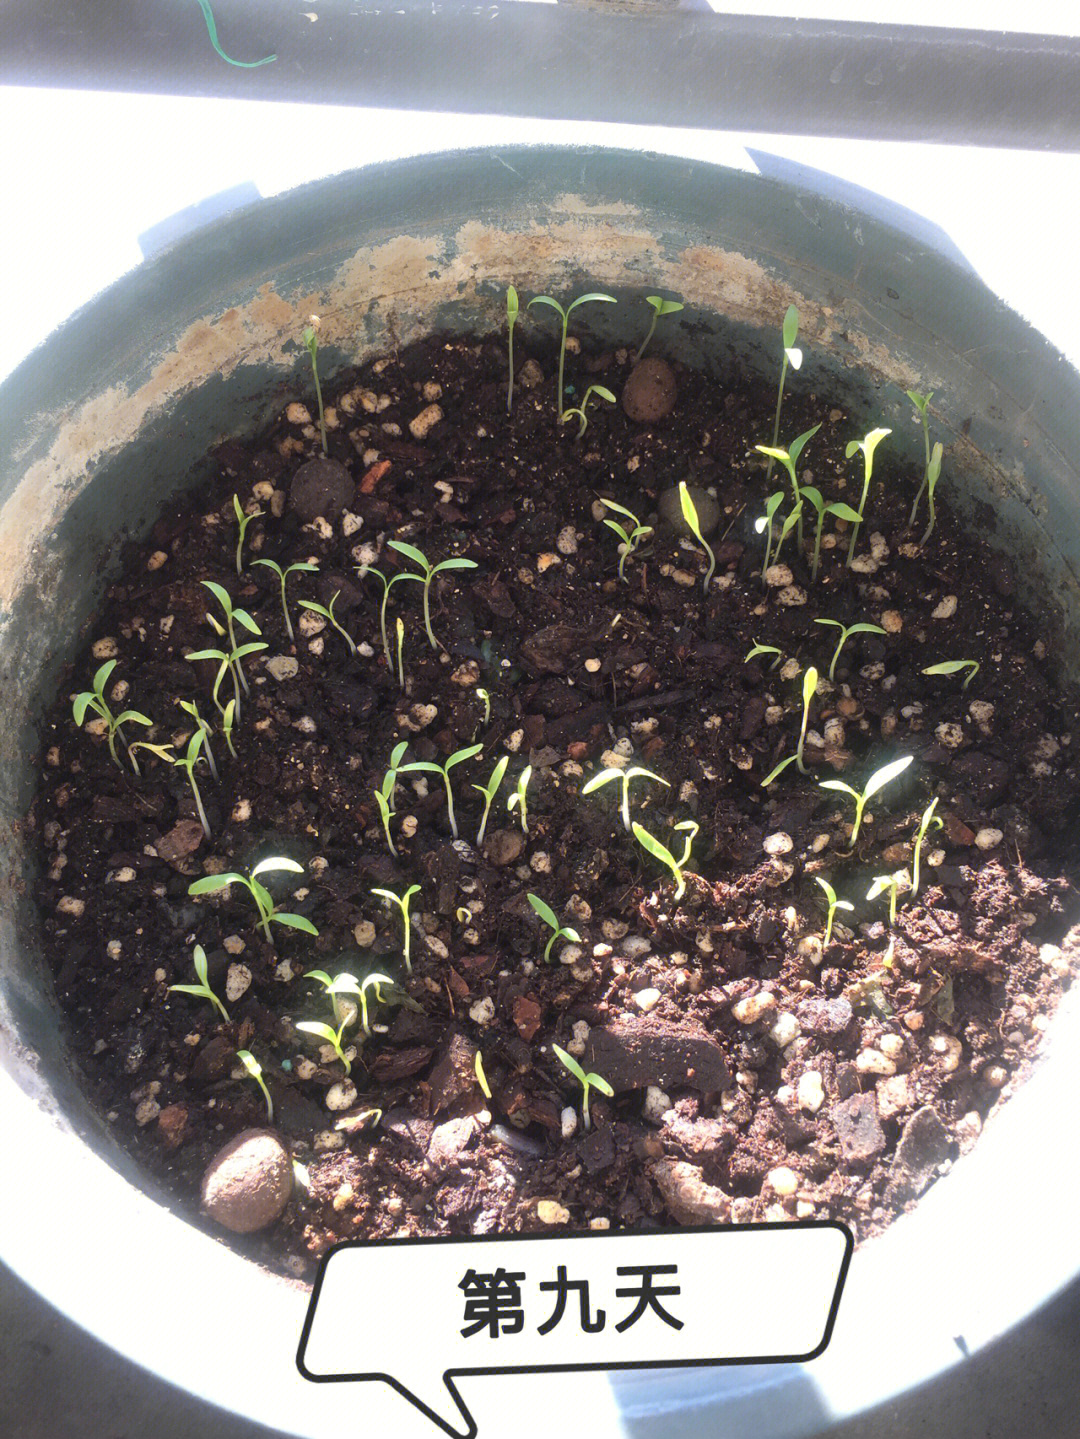 我的种植方法是:种子先放袋子里面把它压成两半,利于发芽